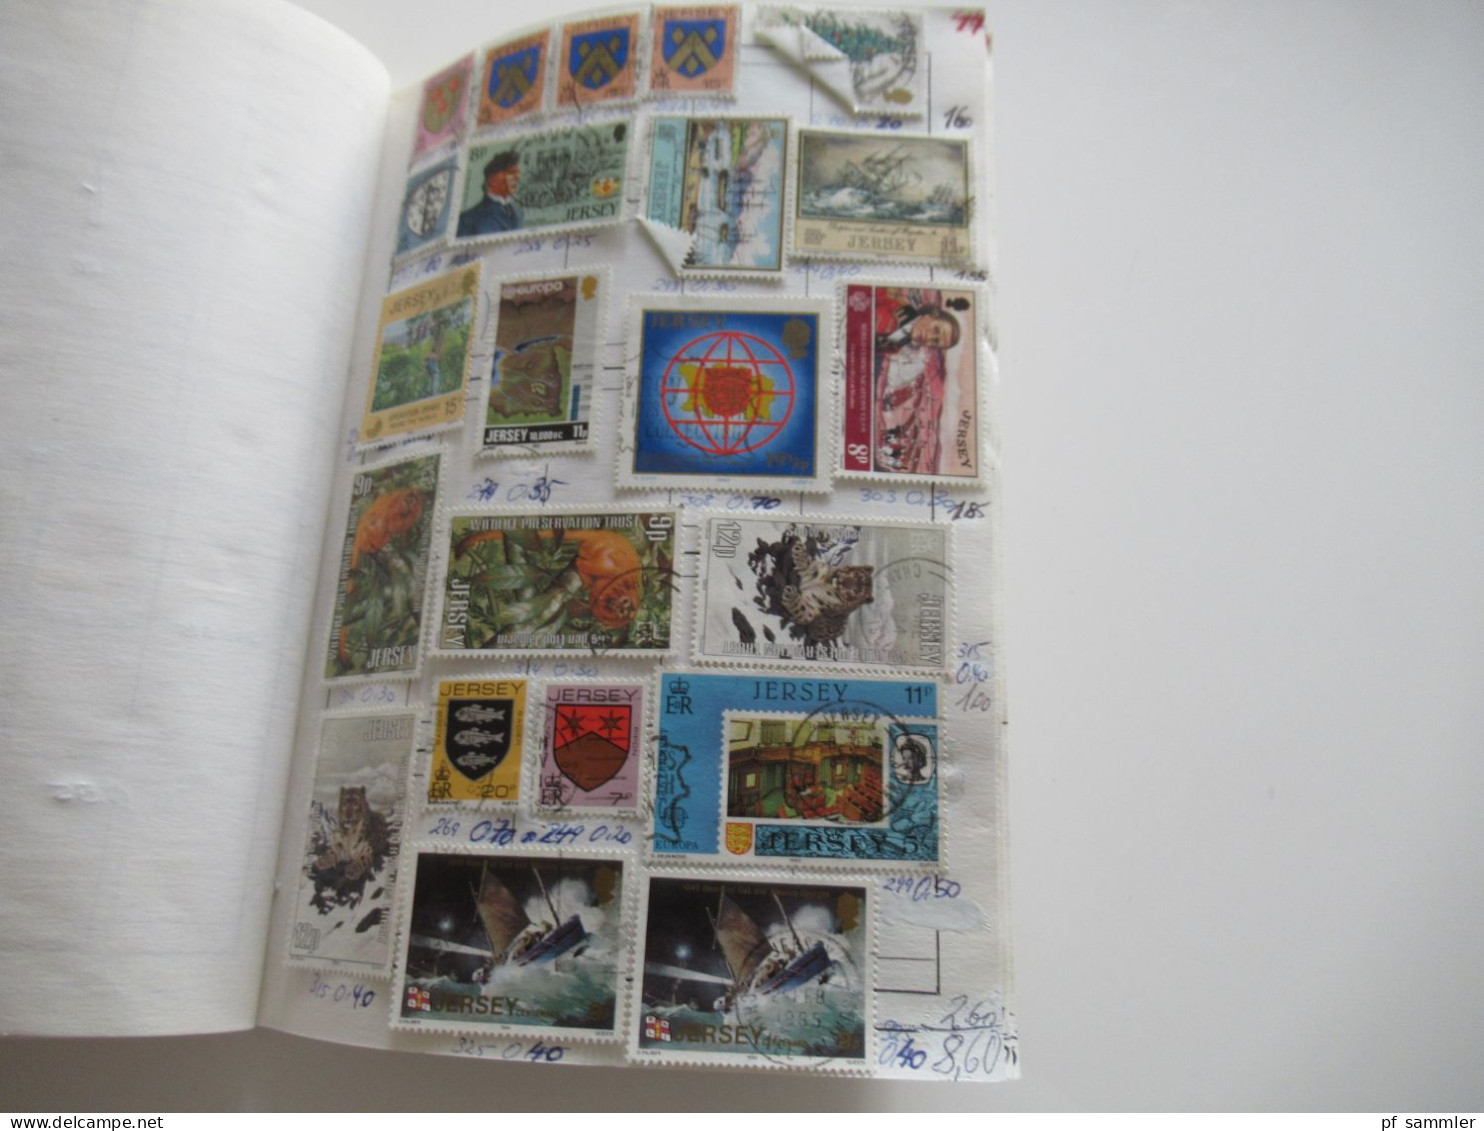 Sammlung / interessantes Auswahlheft Europa Britische Kanalinseln - ca. 1995 massenweise gestempelte Marken / Fundgrube!